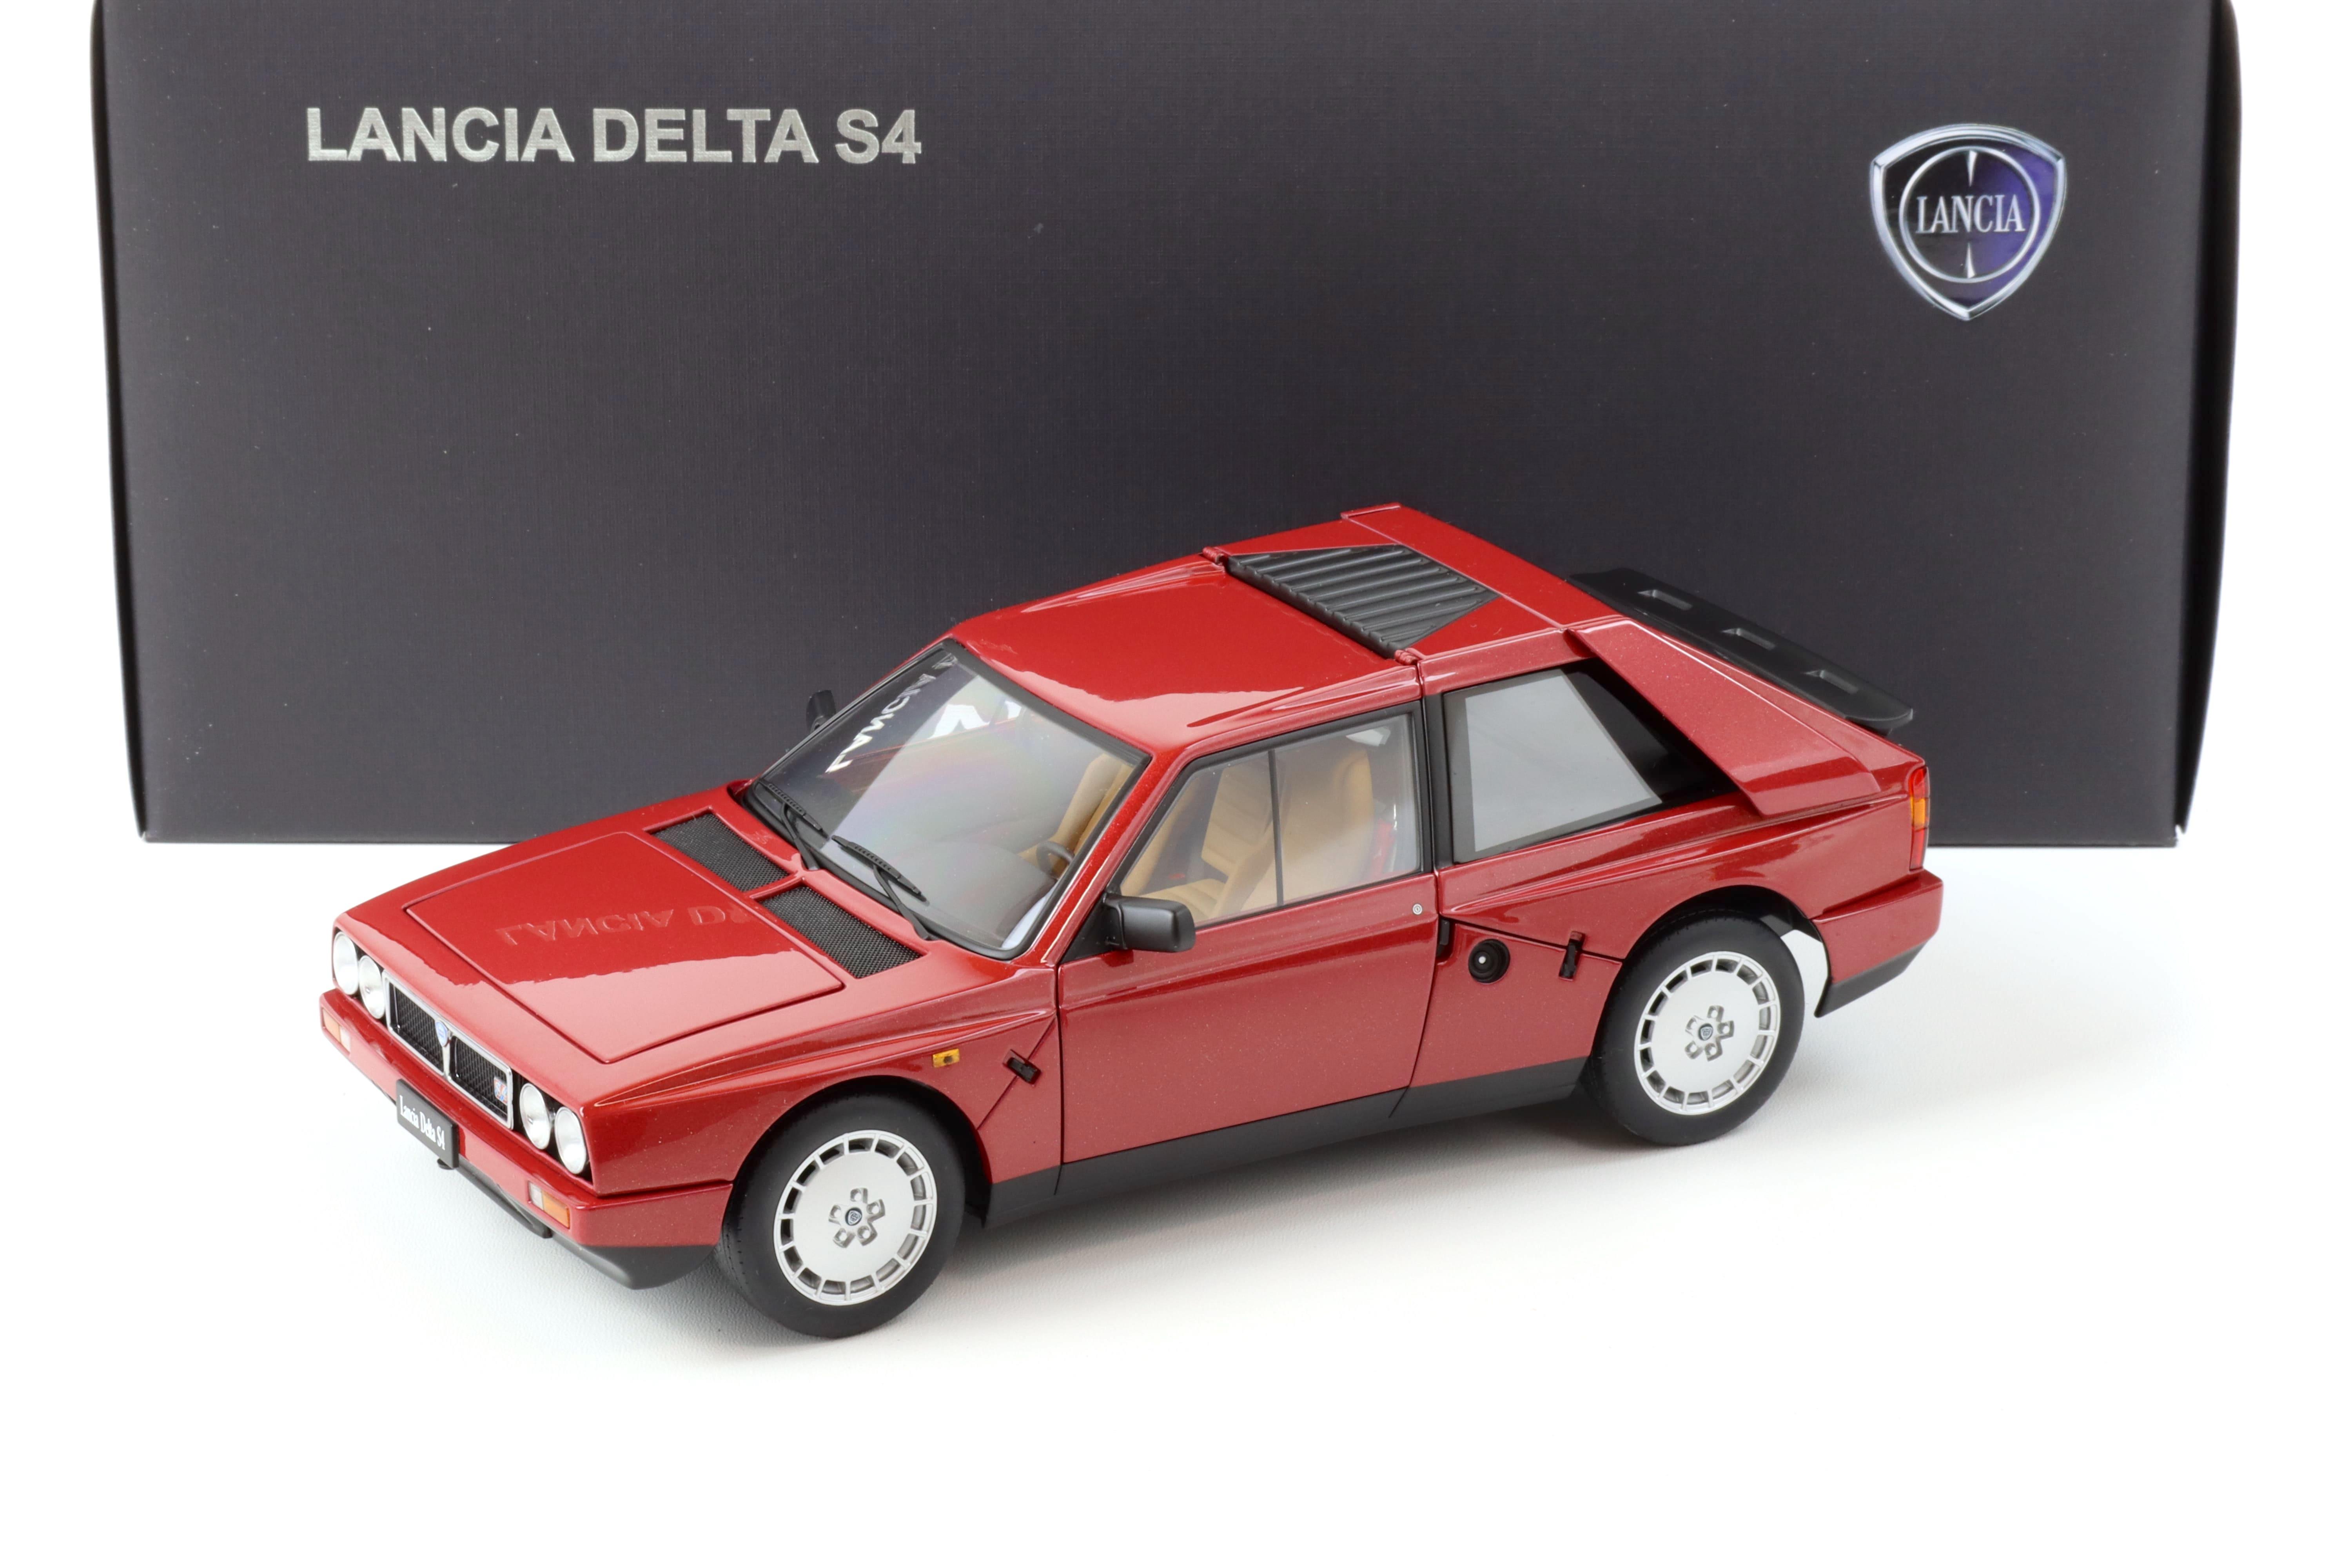 1:18 AUTOart Lancia Delta S4 red 1985 